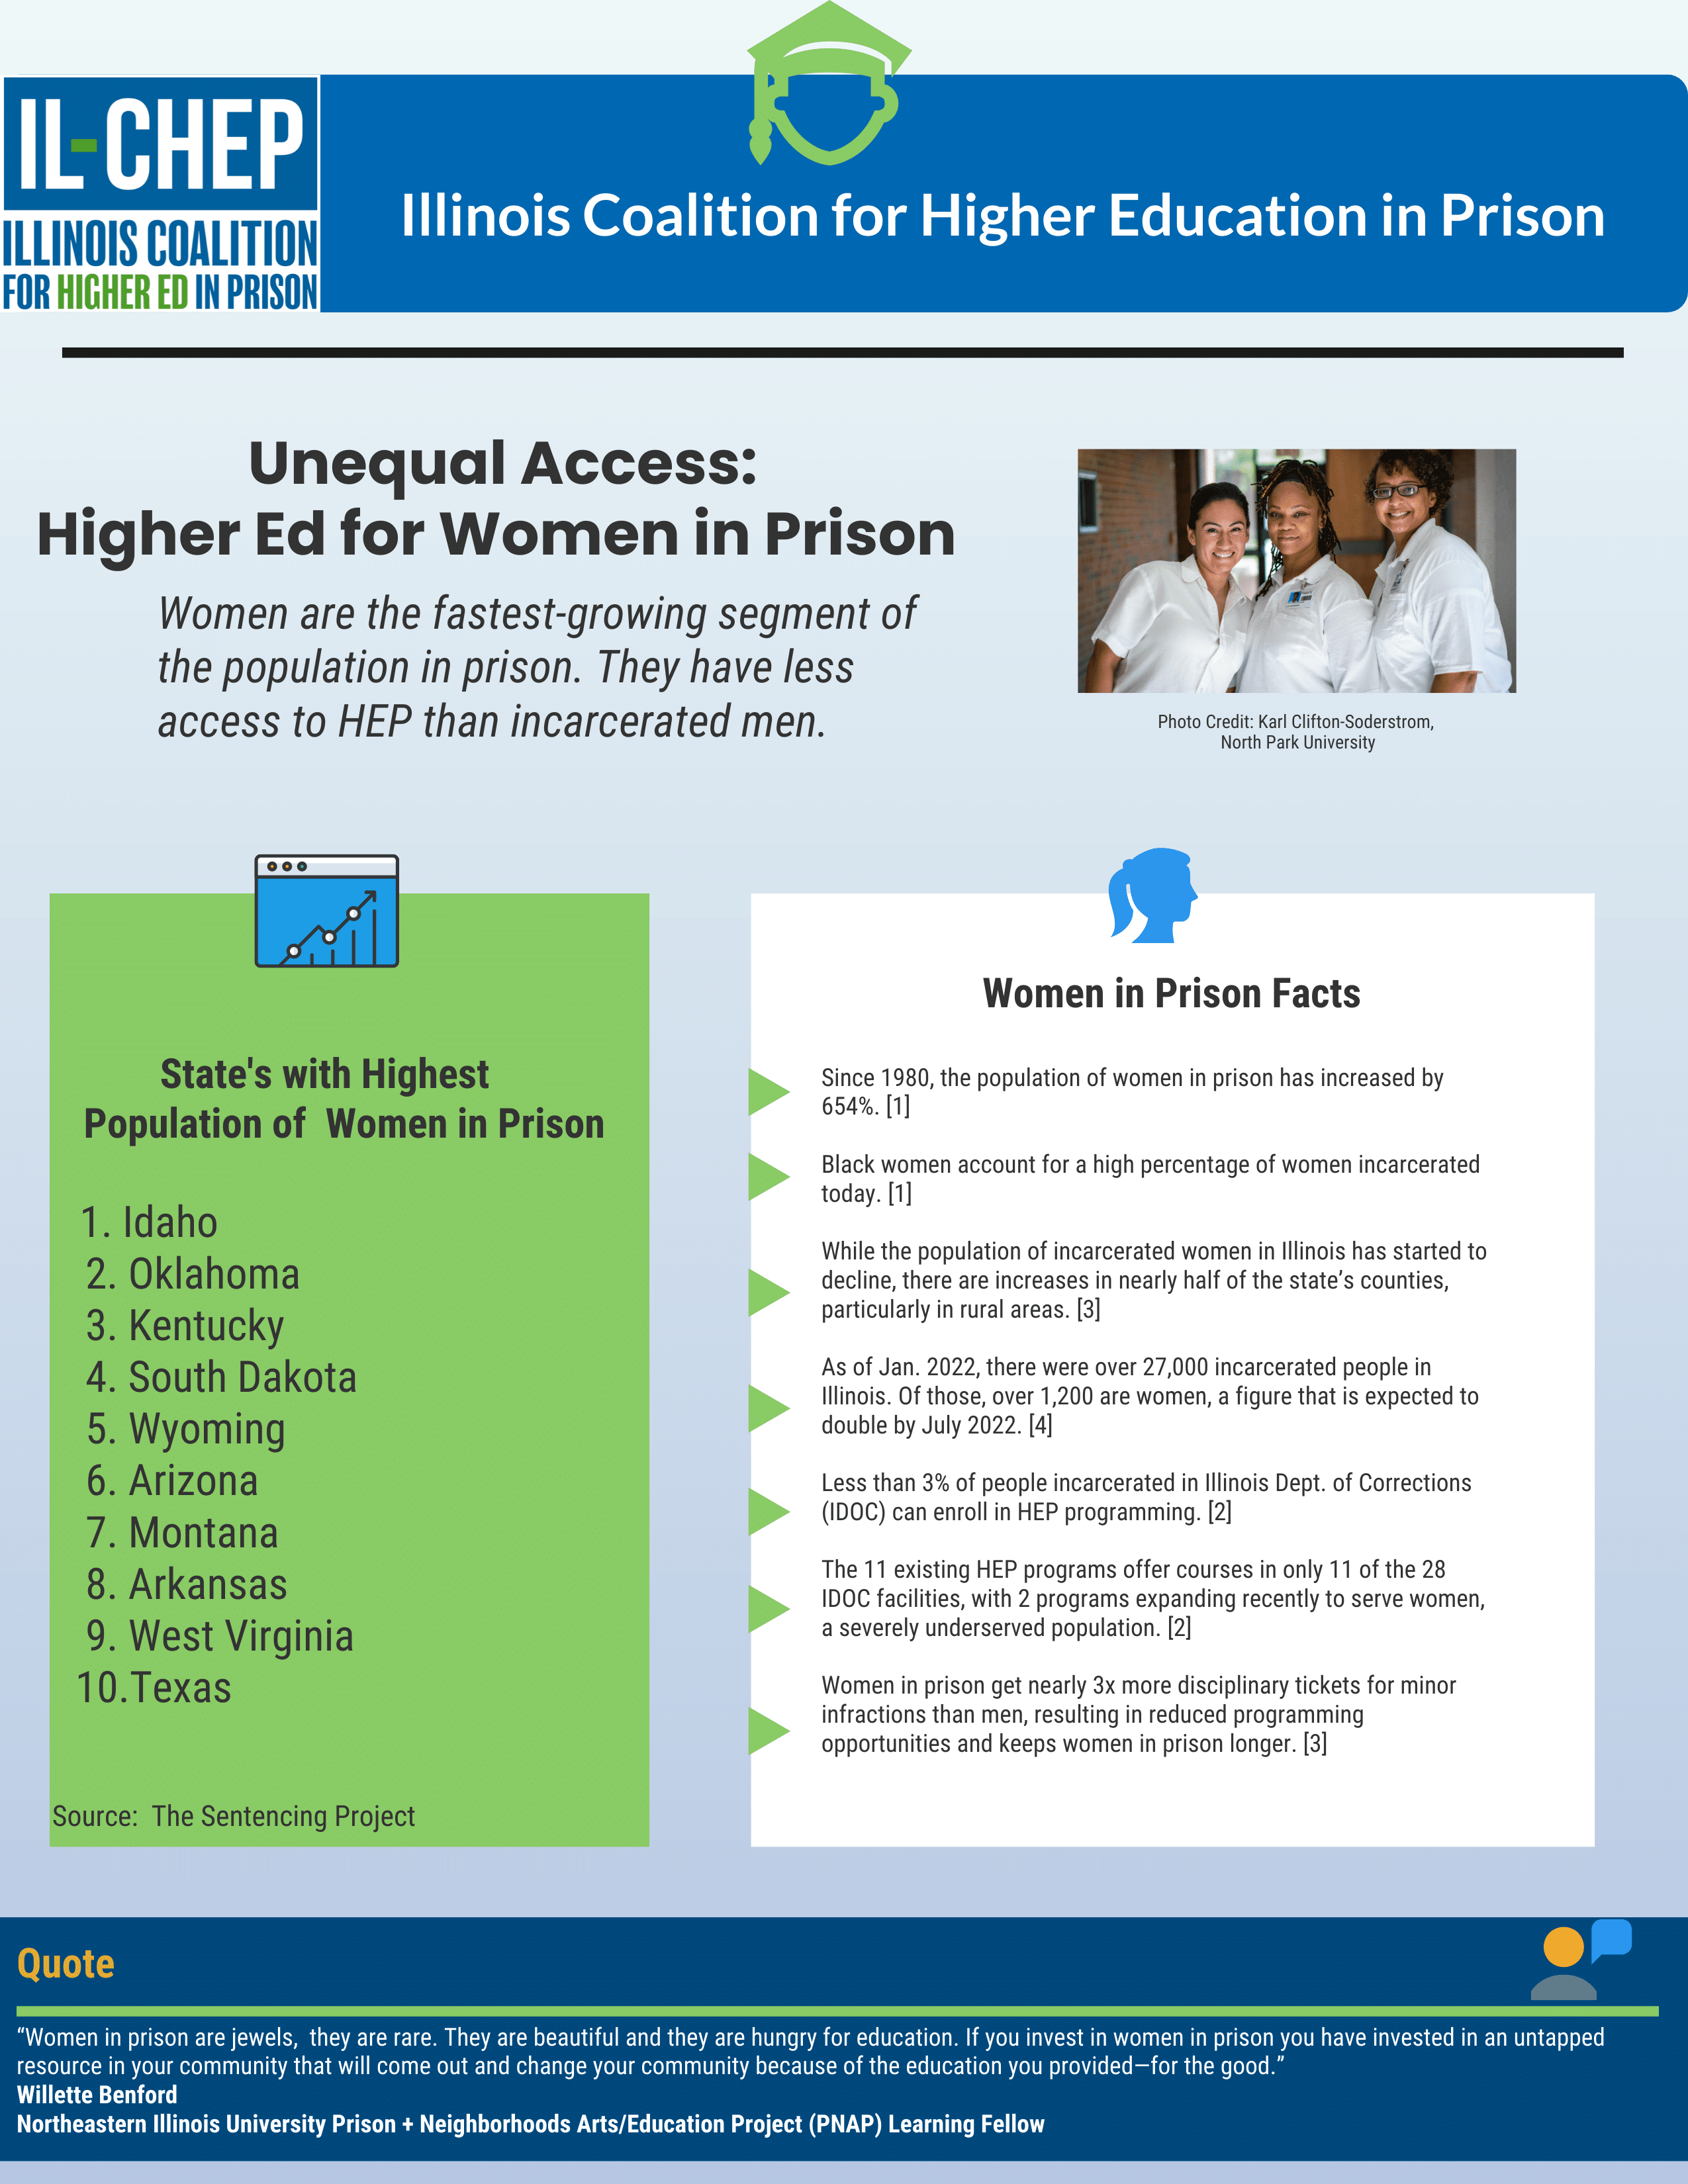 Women in Prison Fact Sheet